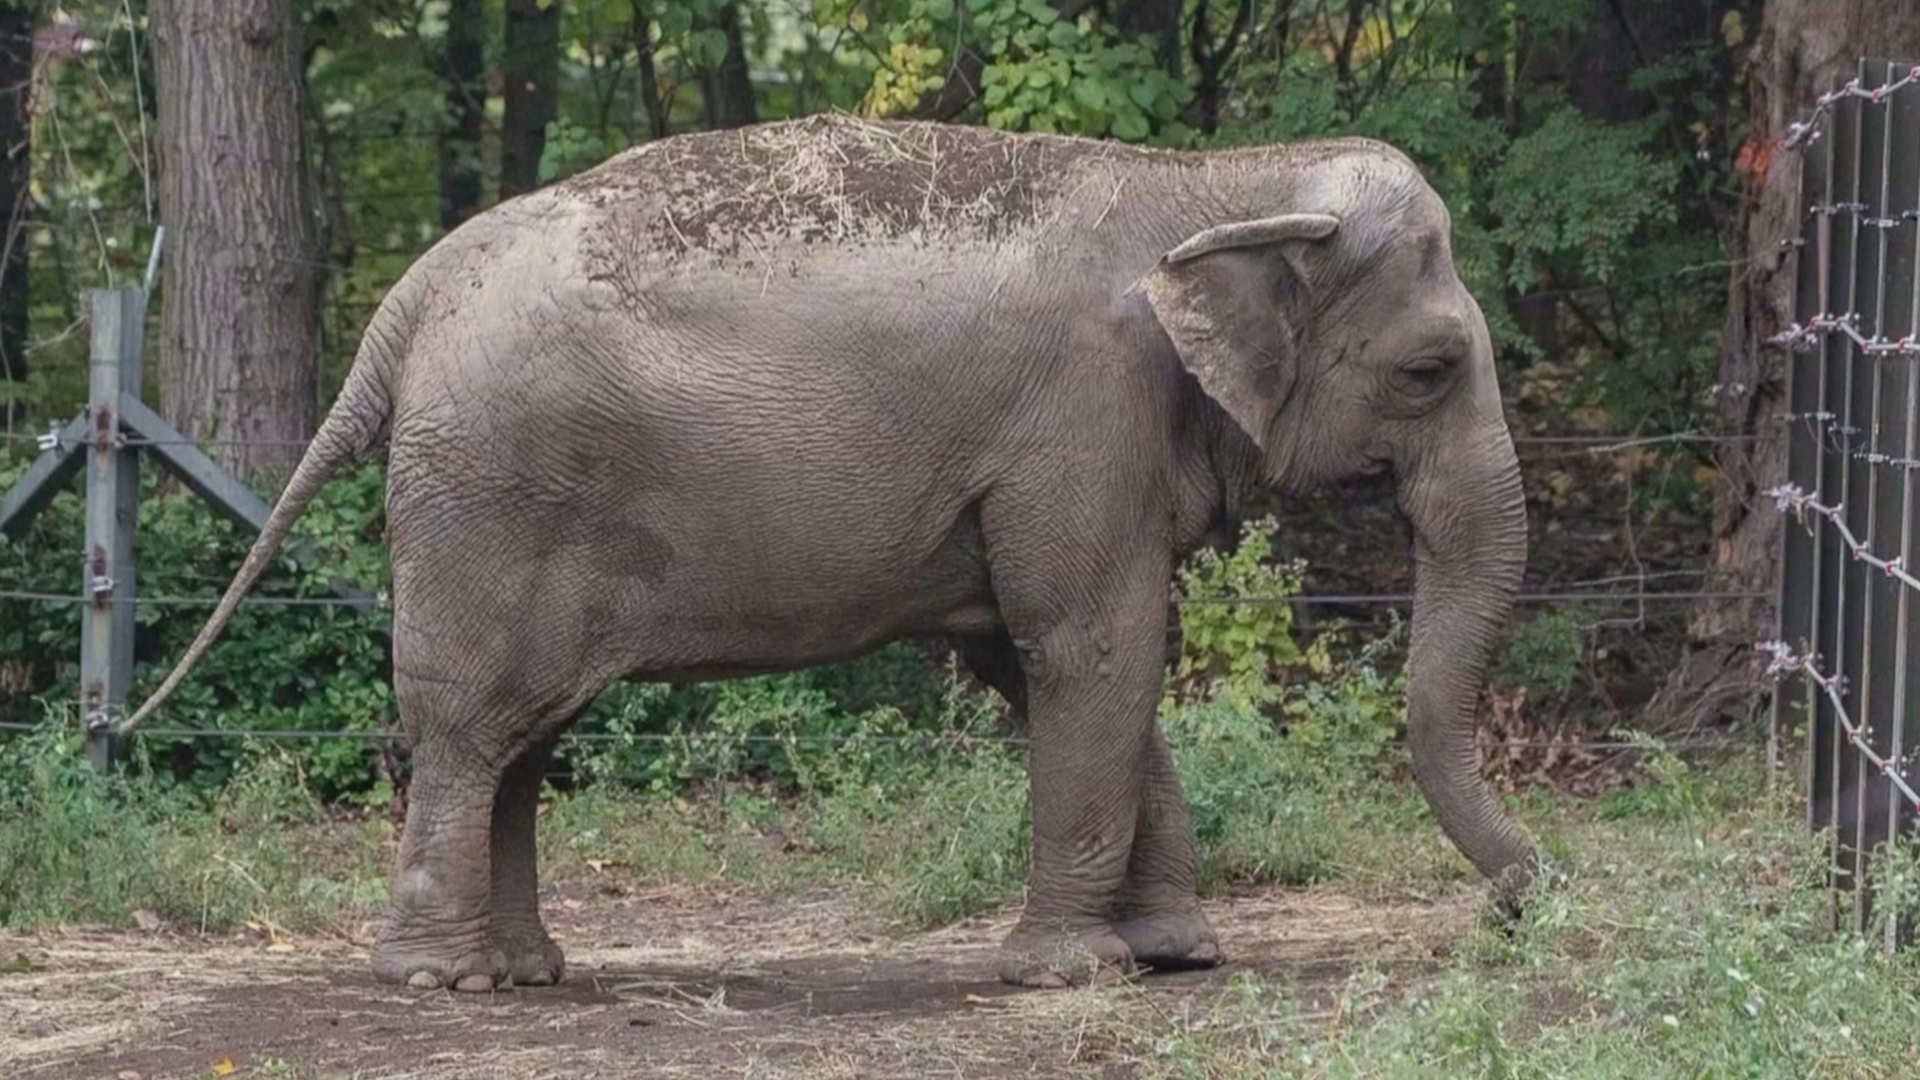 Суд в США отказался дать слонихе Хэппи человеческие права